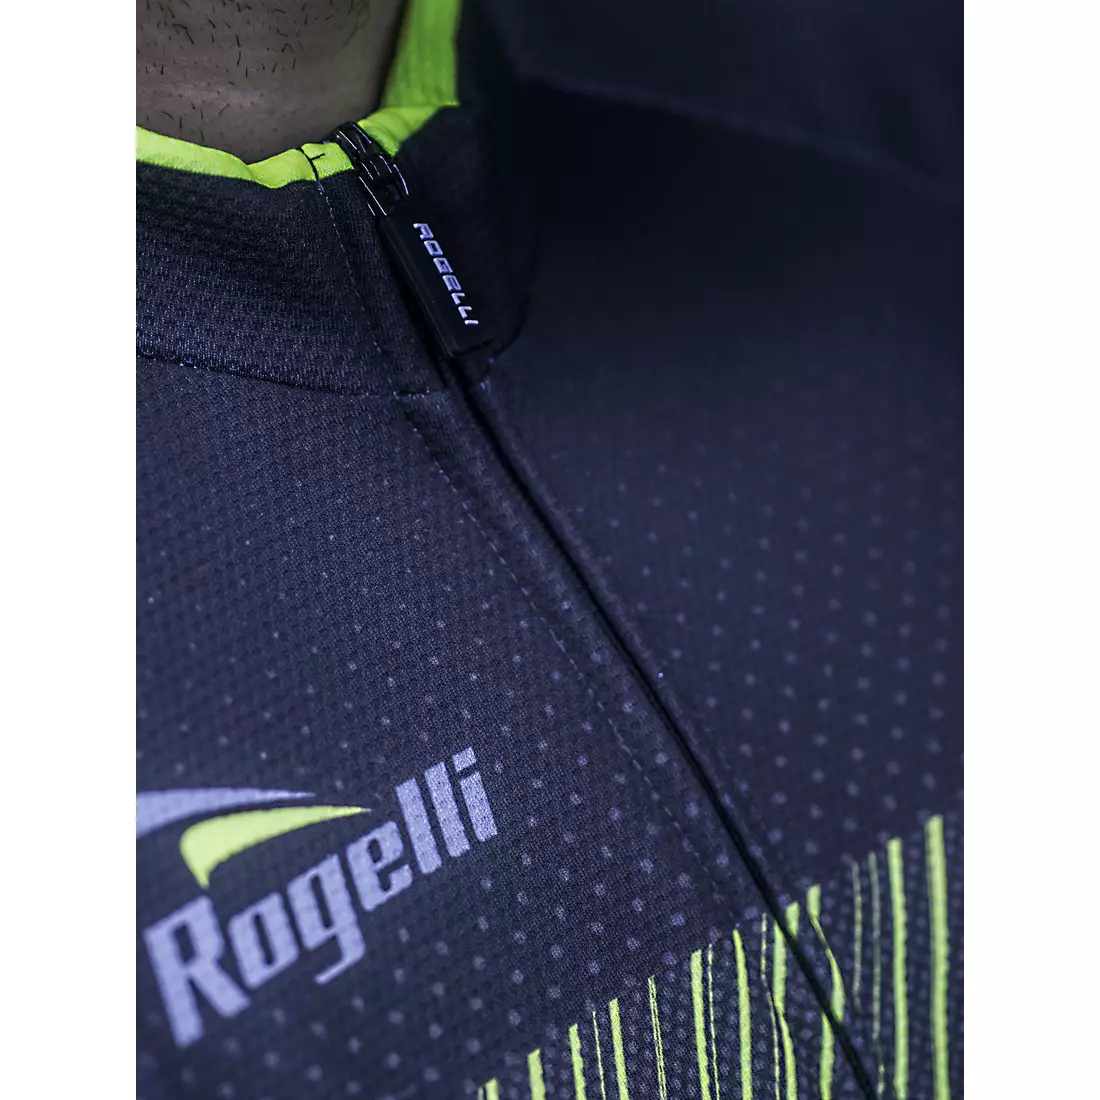 ROGELLI RITMO tricou de ciclism pentru bărbați, negru-gri-galben fluor